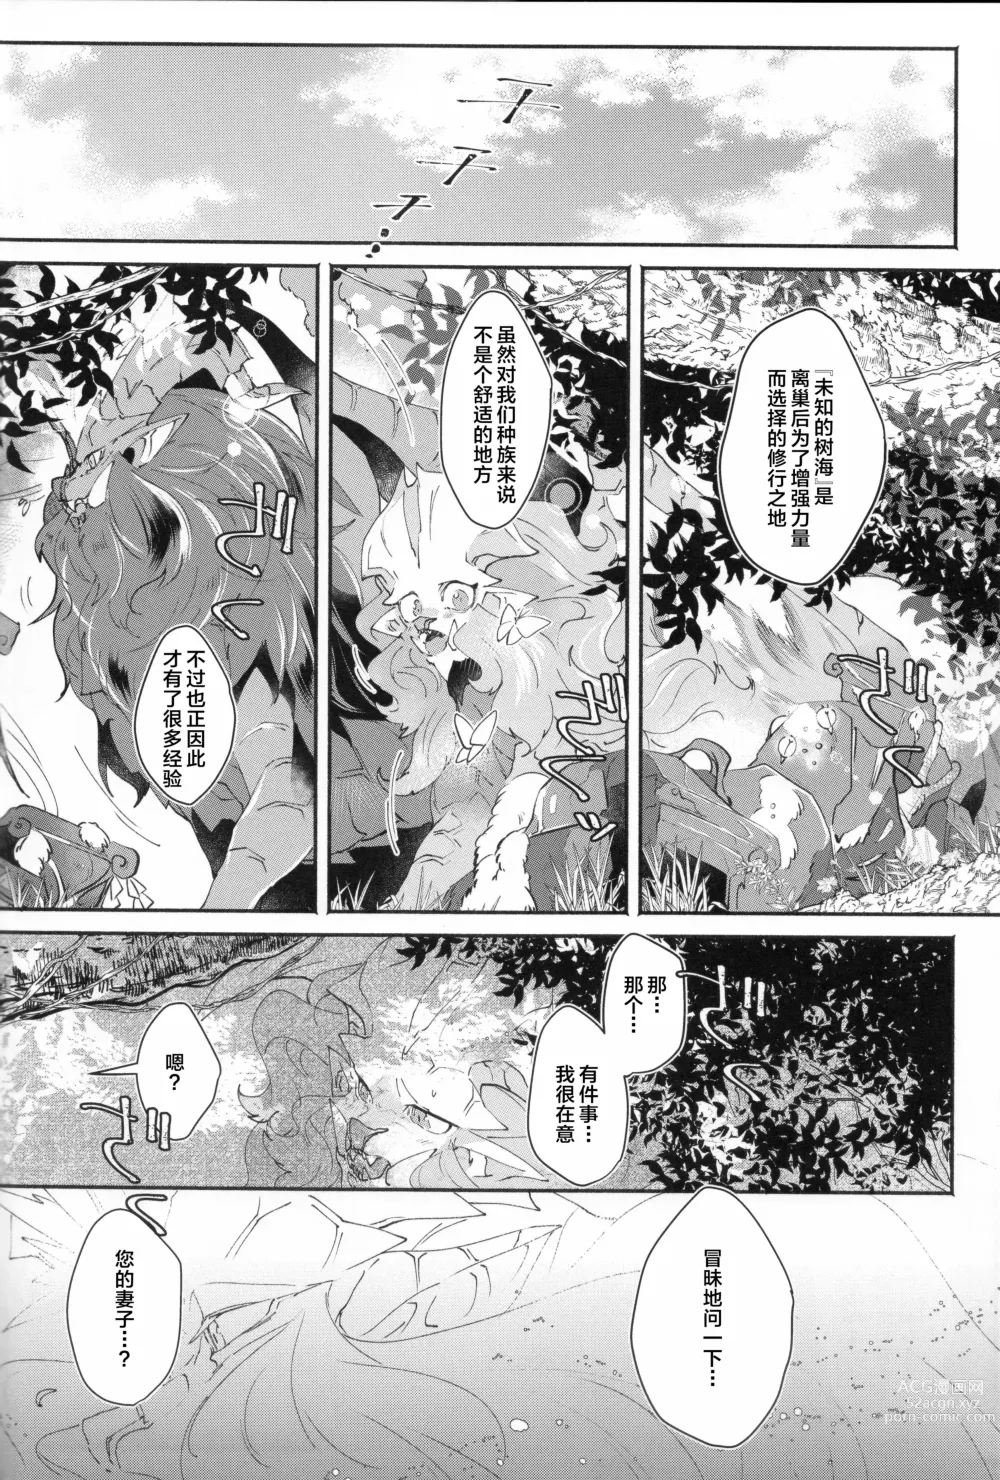 Page 26 of doujinshi VALSE